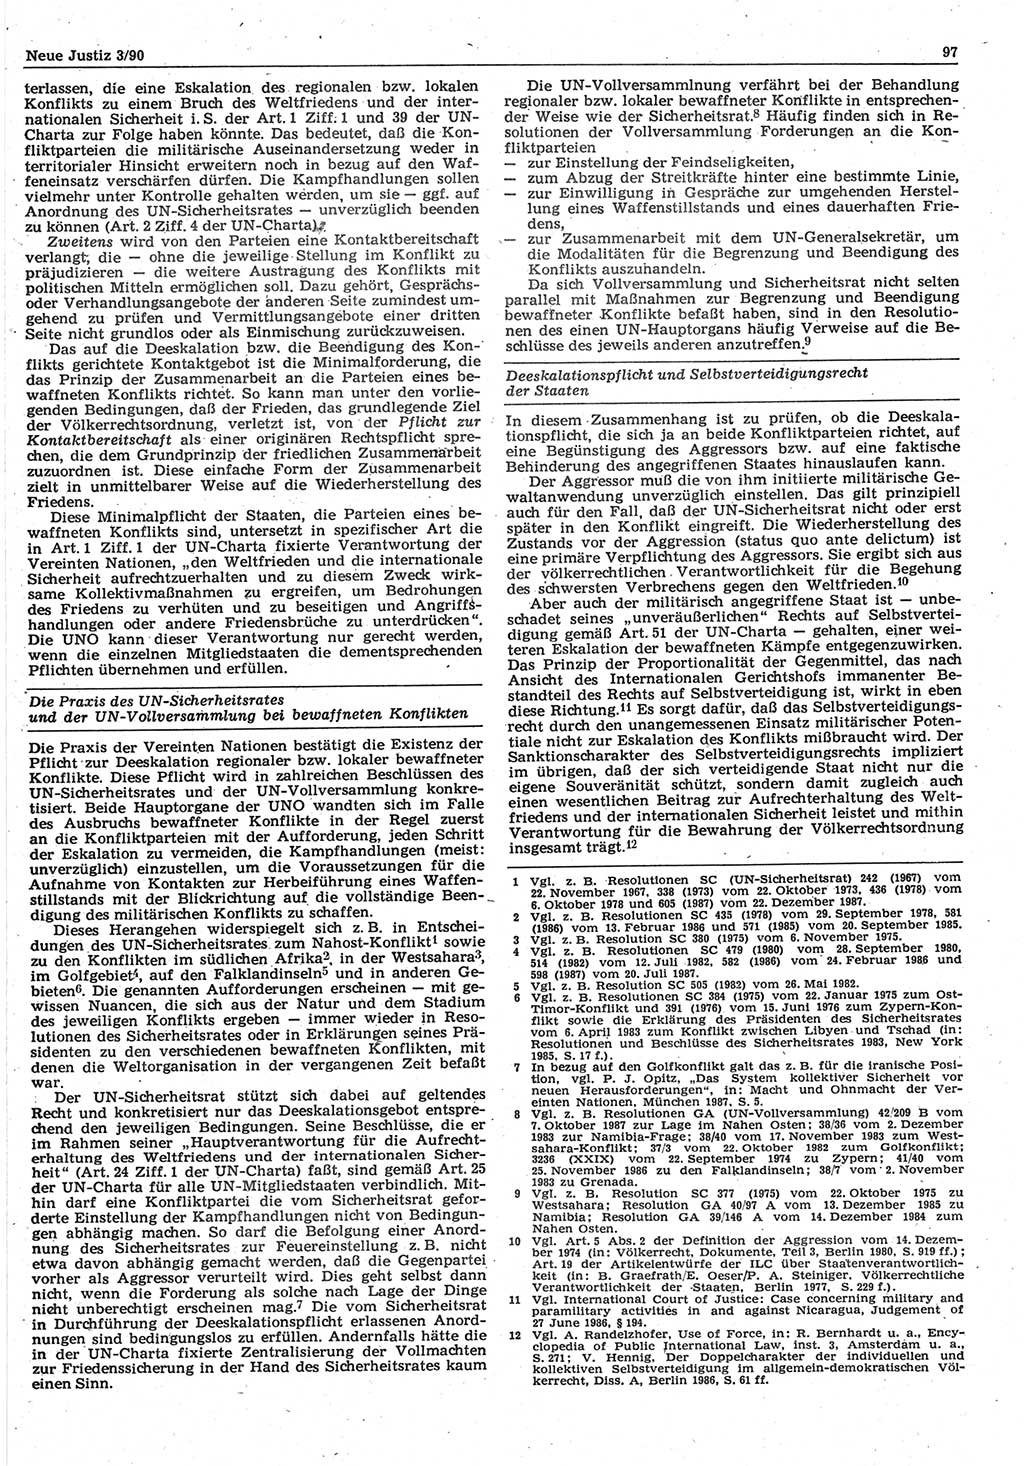 Neue Justiz (NJ), Zeitschrift für Rechtsetzung und Rechtsanwendung [Deutsche Demokratische Republik (DDR)], 44. Jahrgang 1990, Seite 97 (NJ DDR 1990, S. 97)